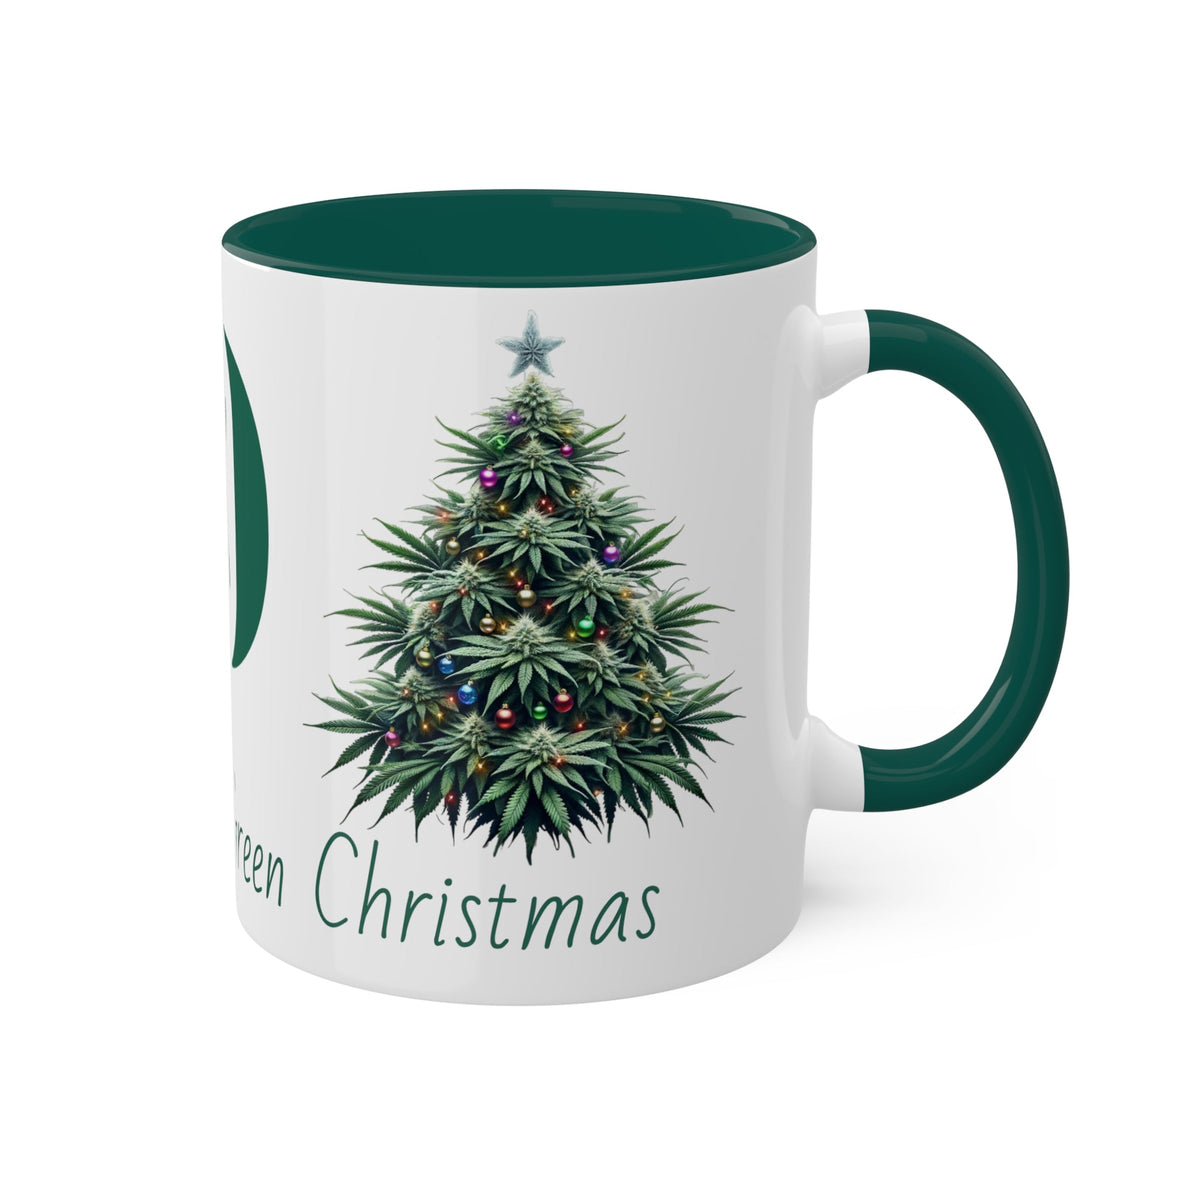 Dreaming of a Green Christmas Mug, 11oz